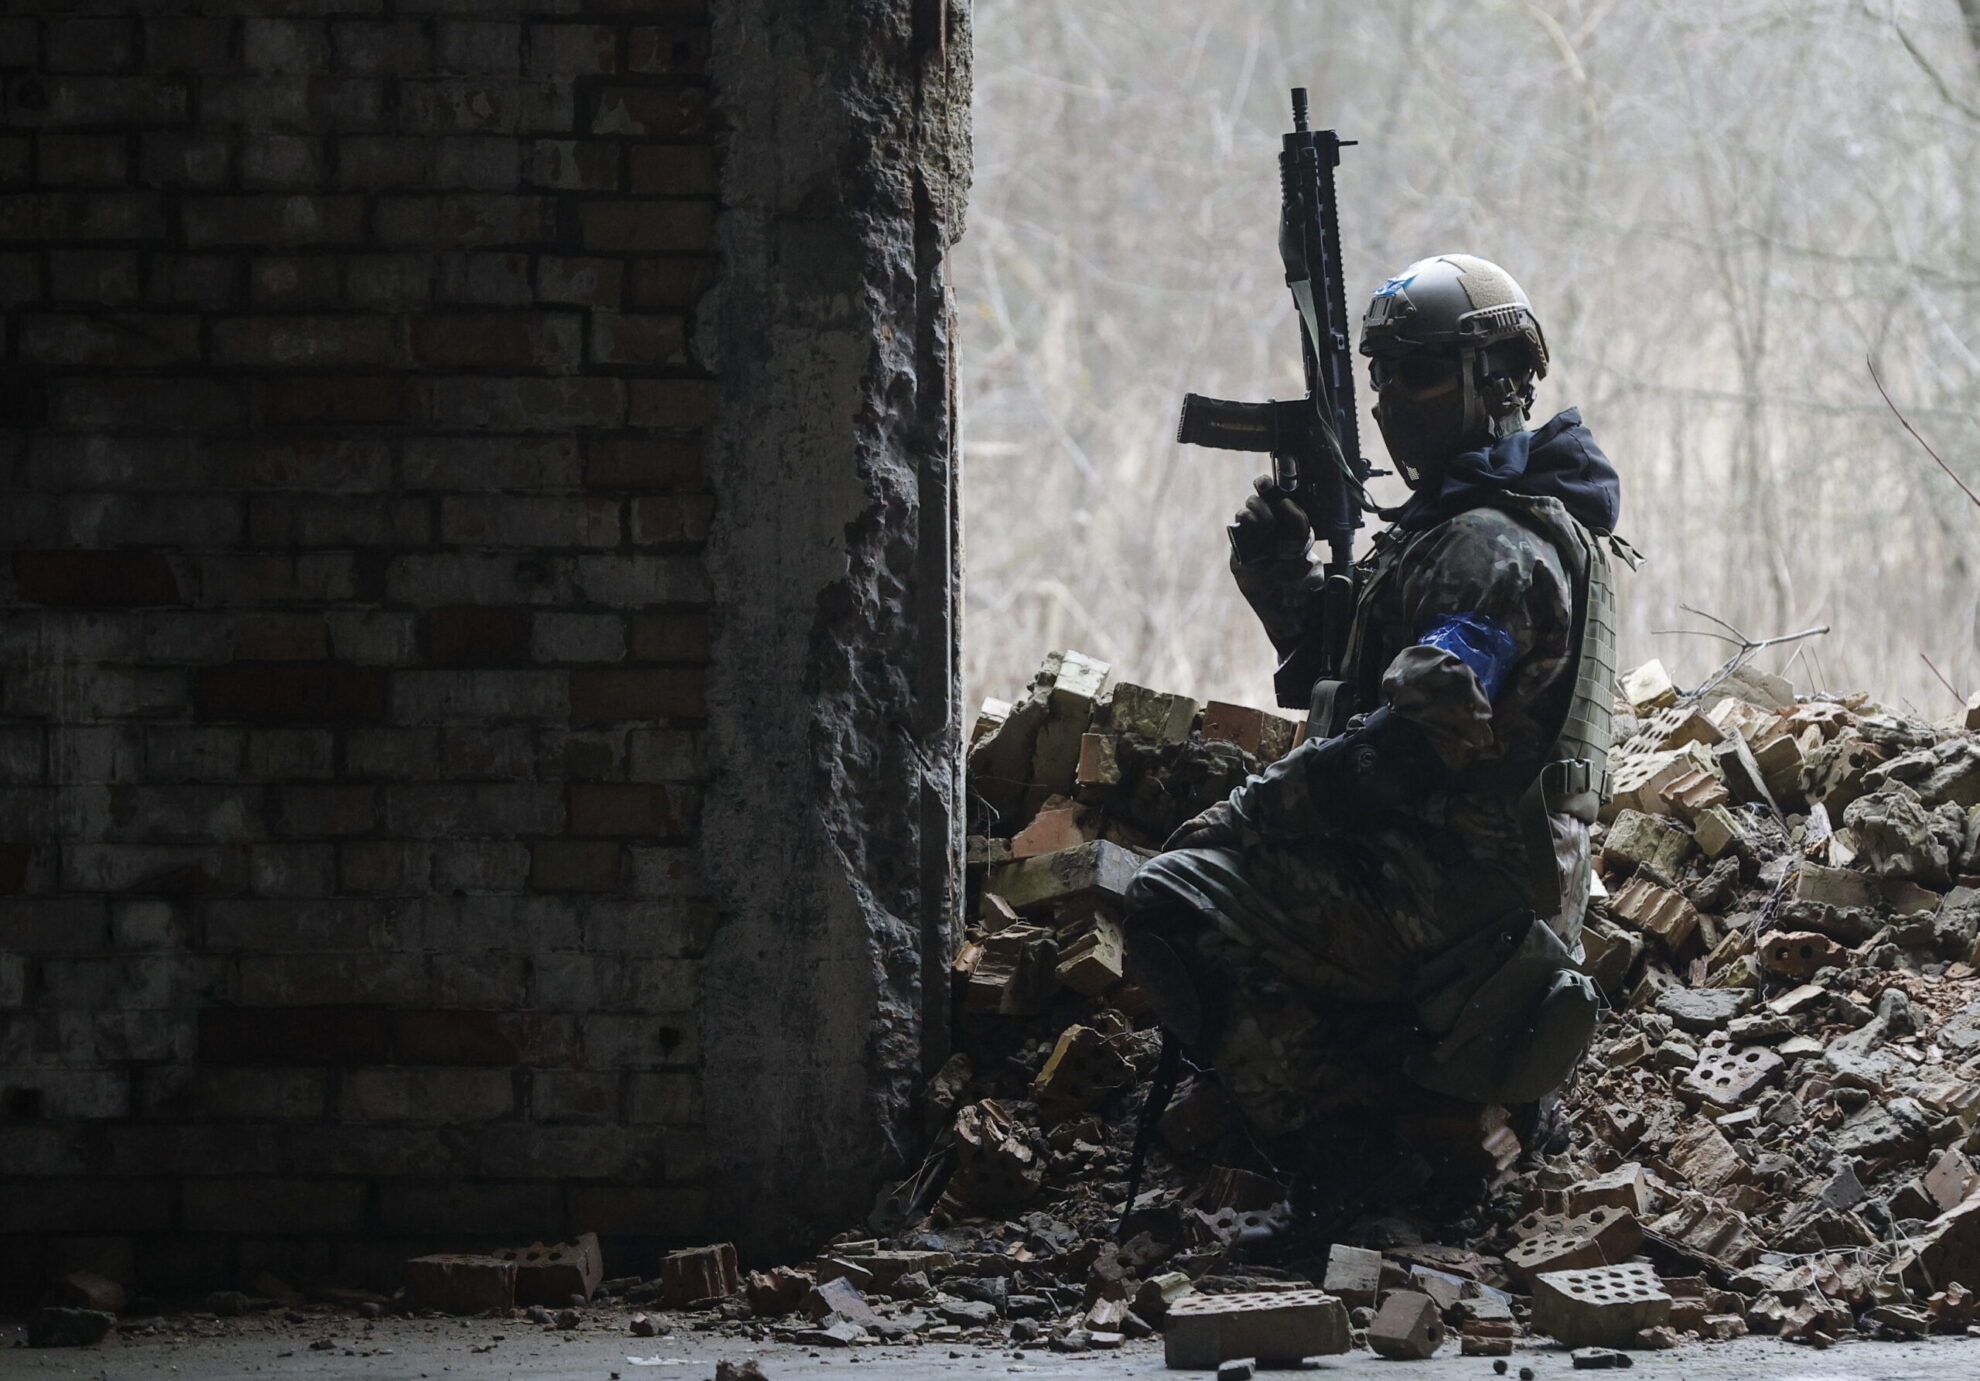 Λέξεις που σημάδεψαν τον δεύτερο χρόνο του πολέμου στην Ουκρανία